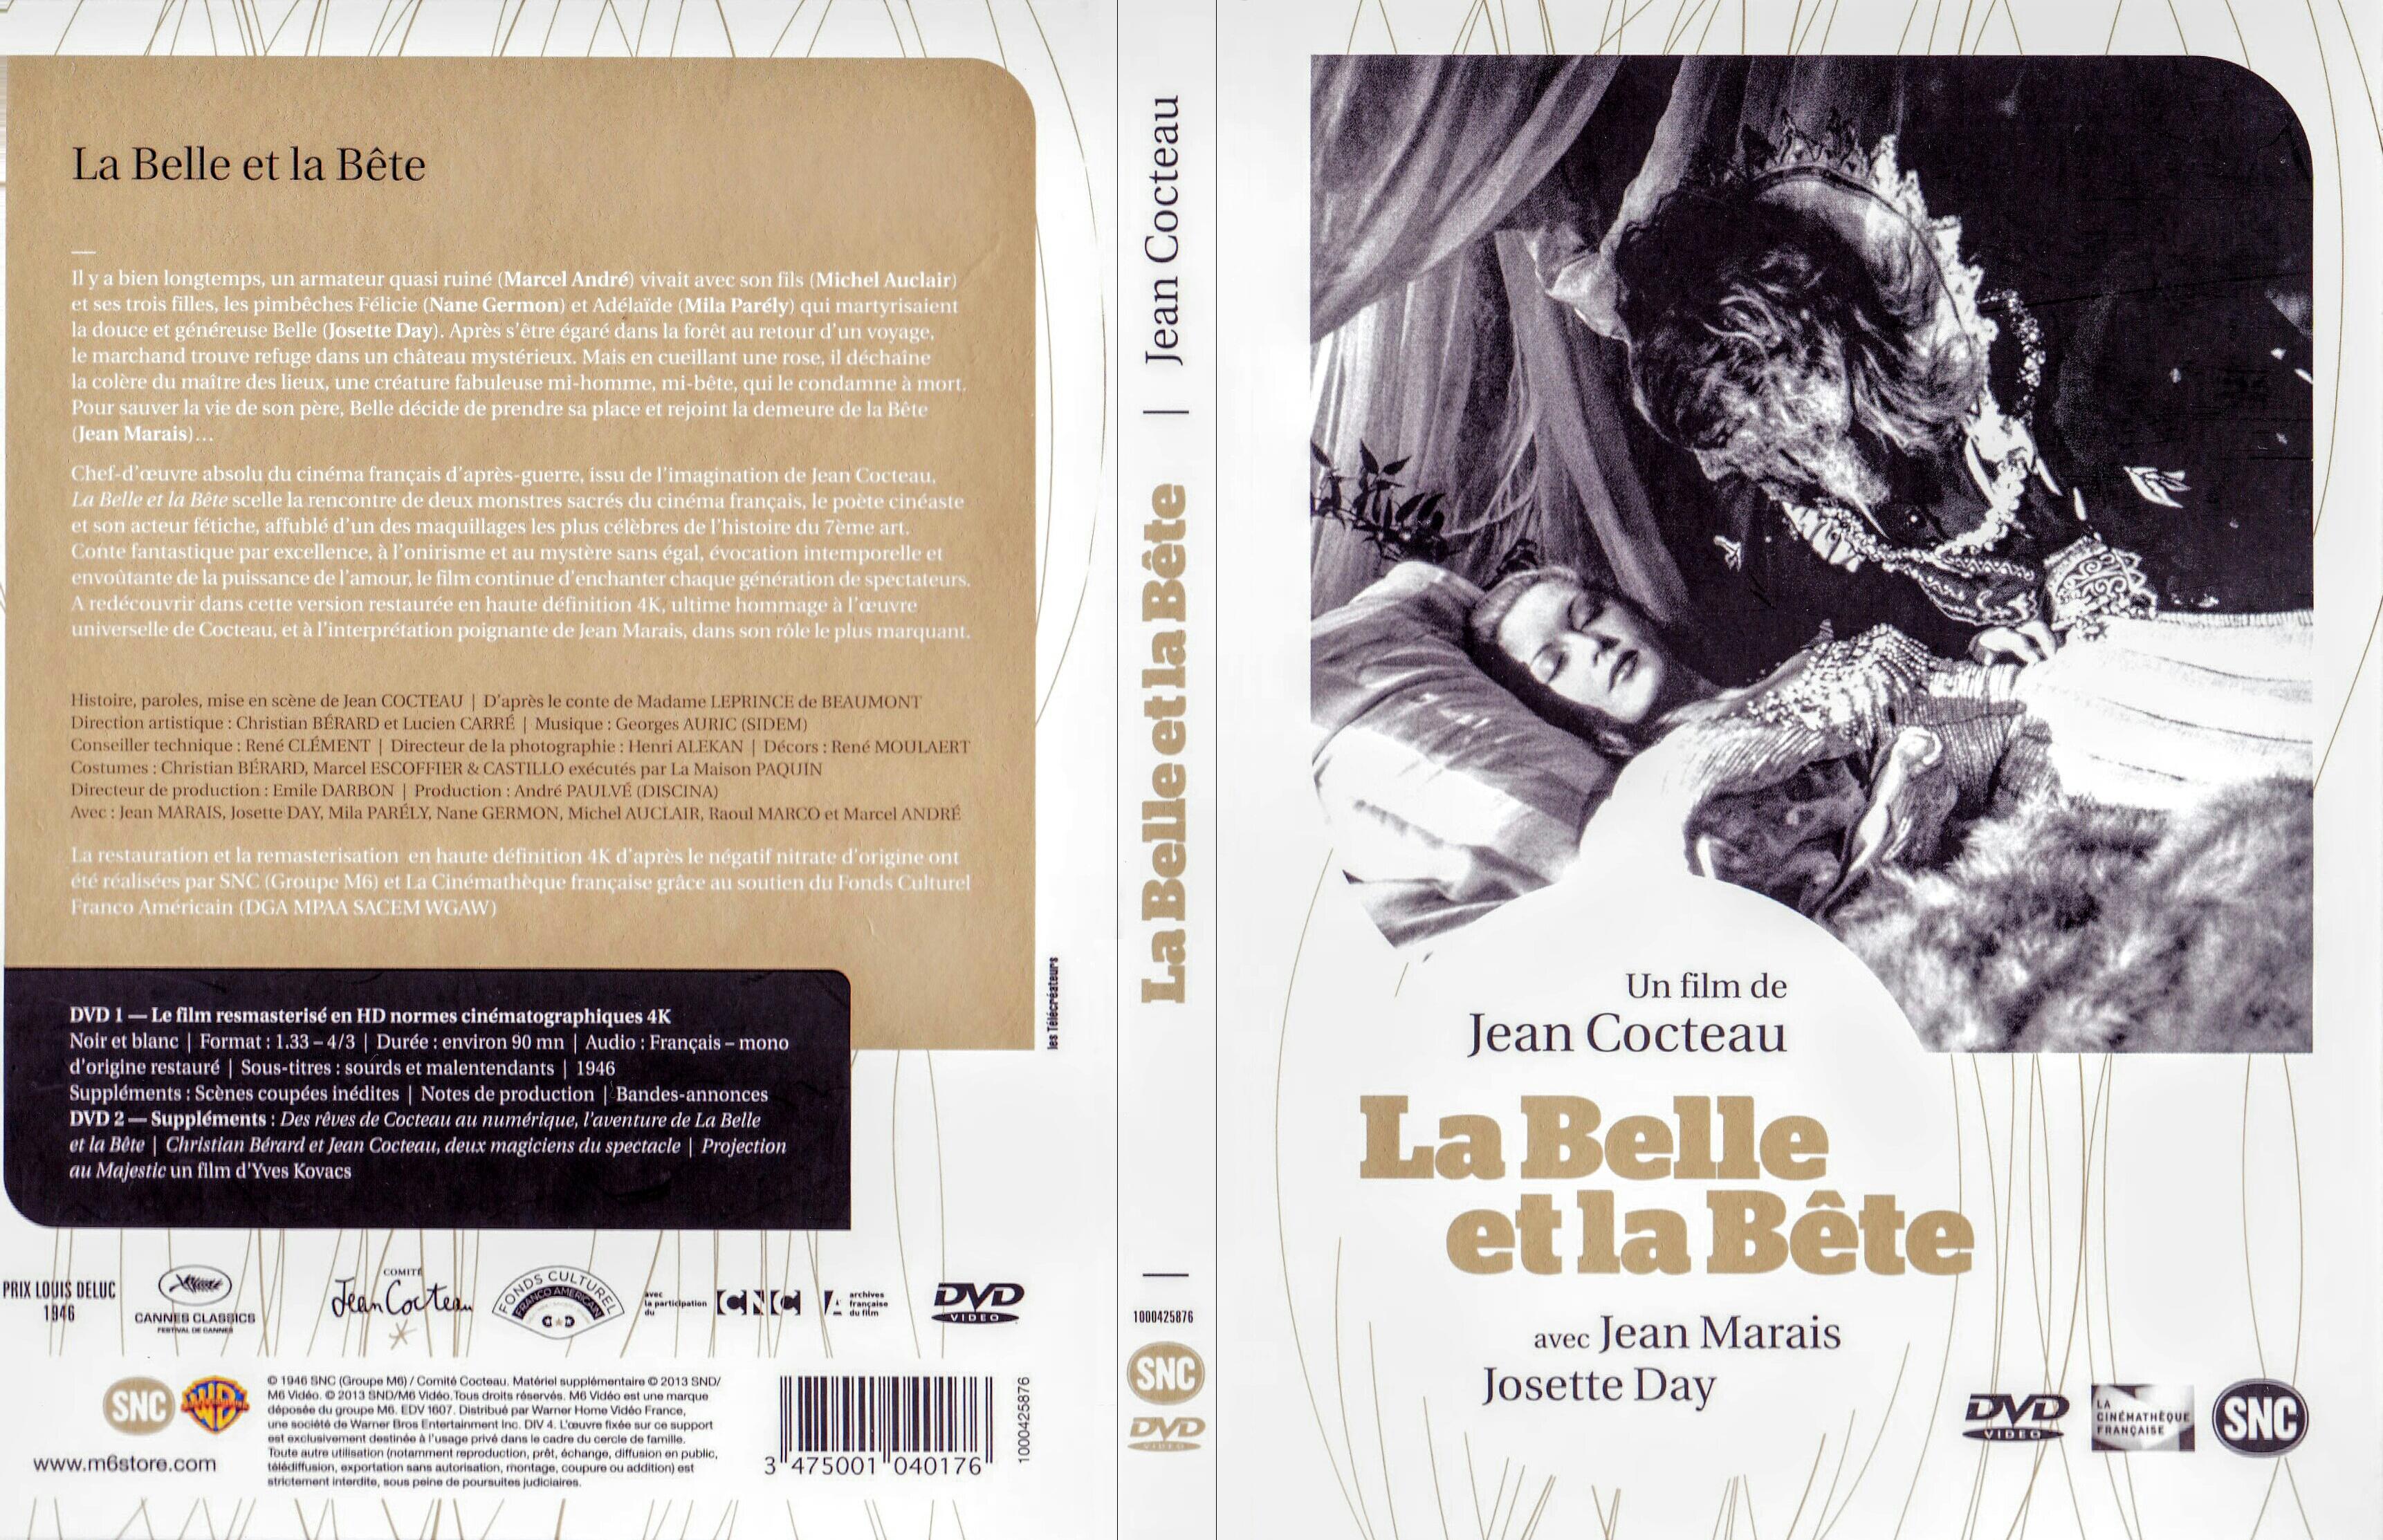 Jaquette DVD La belle et la bete Le Film v4